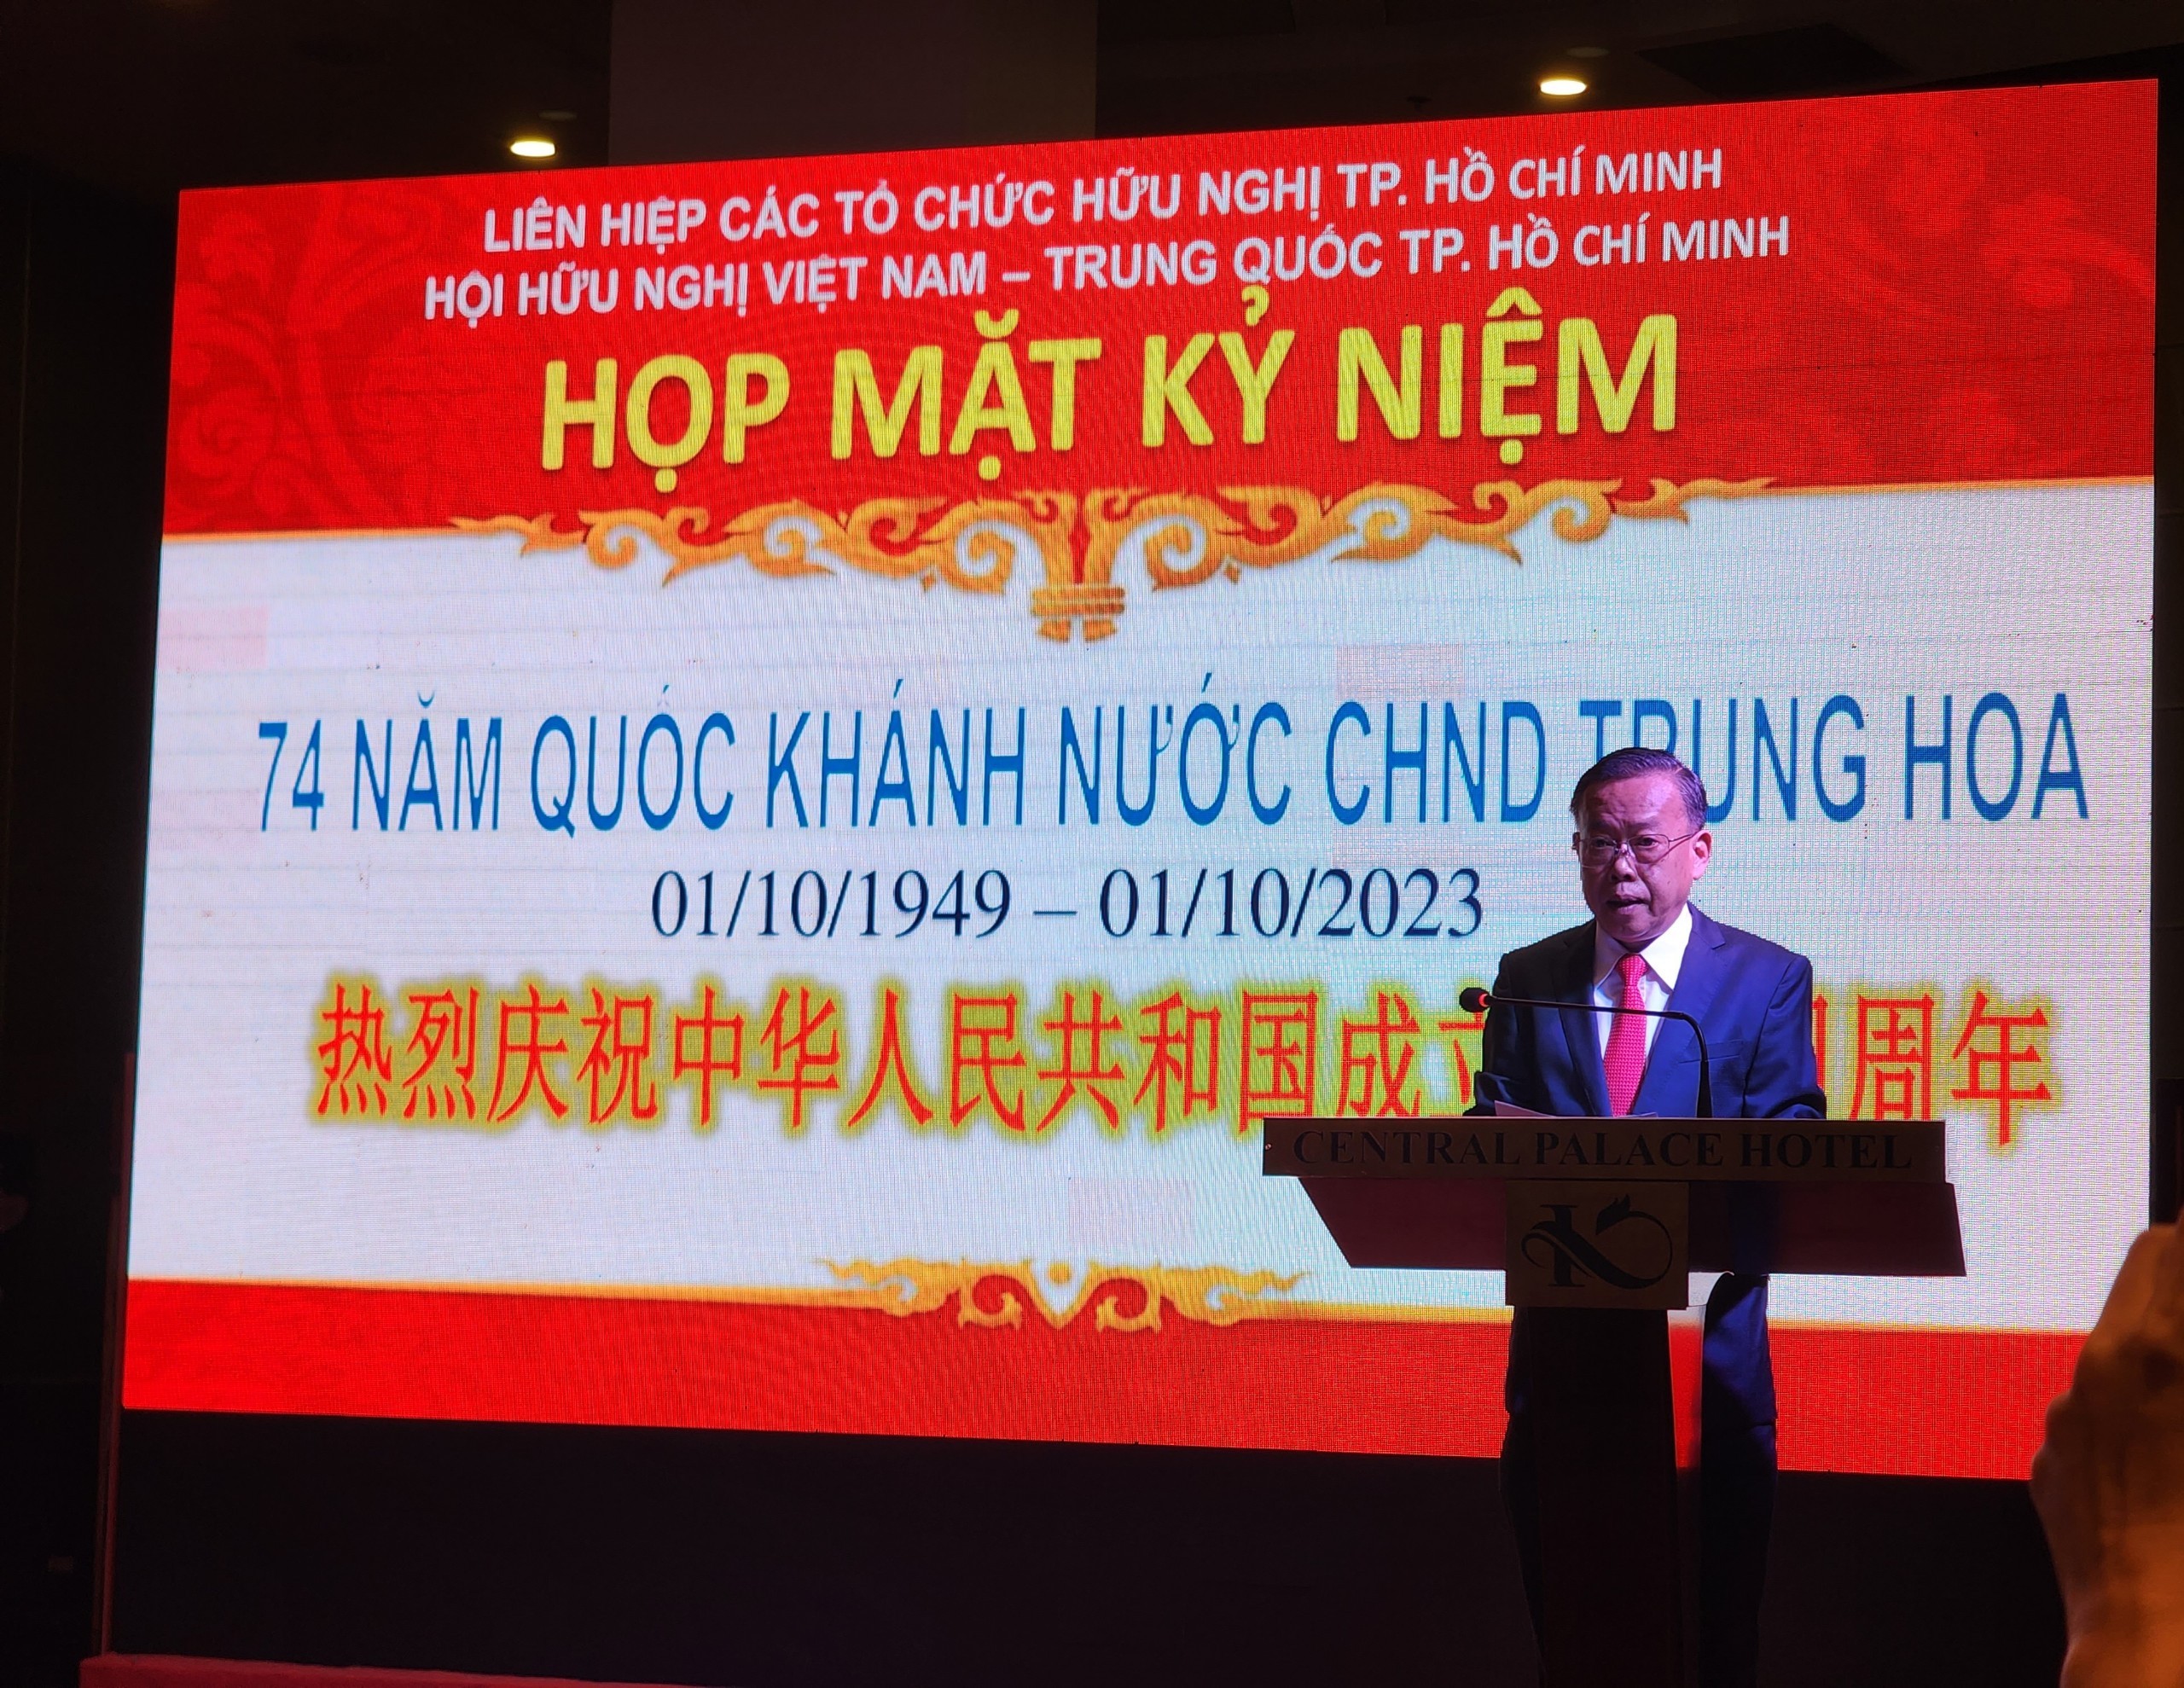 Ông Nguyễn Hữu Hiệp, Chủ tịch Hội hữu nghị Việt Nam - Trung Quốc Thành phố Hồ Chí Minh phát biểu tại buổi họp mặt. (Ảnh: htv.com.vn)